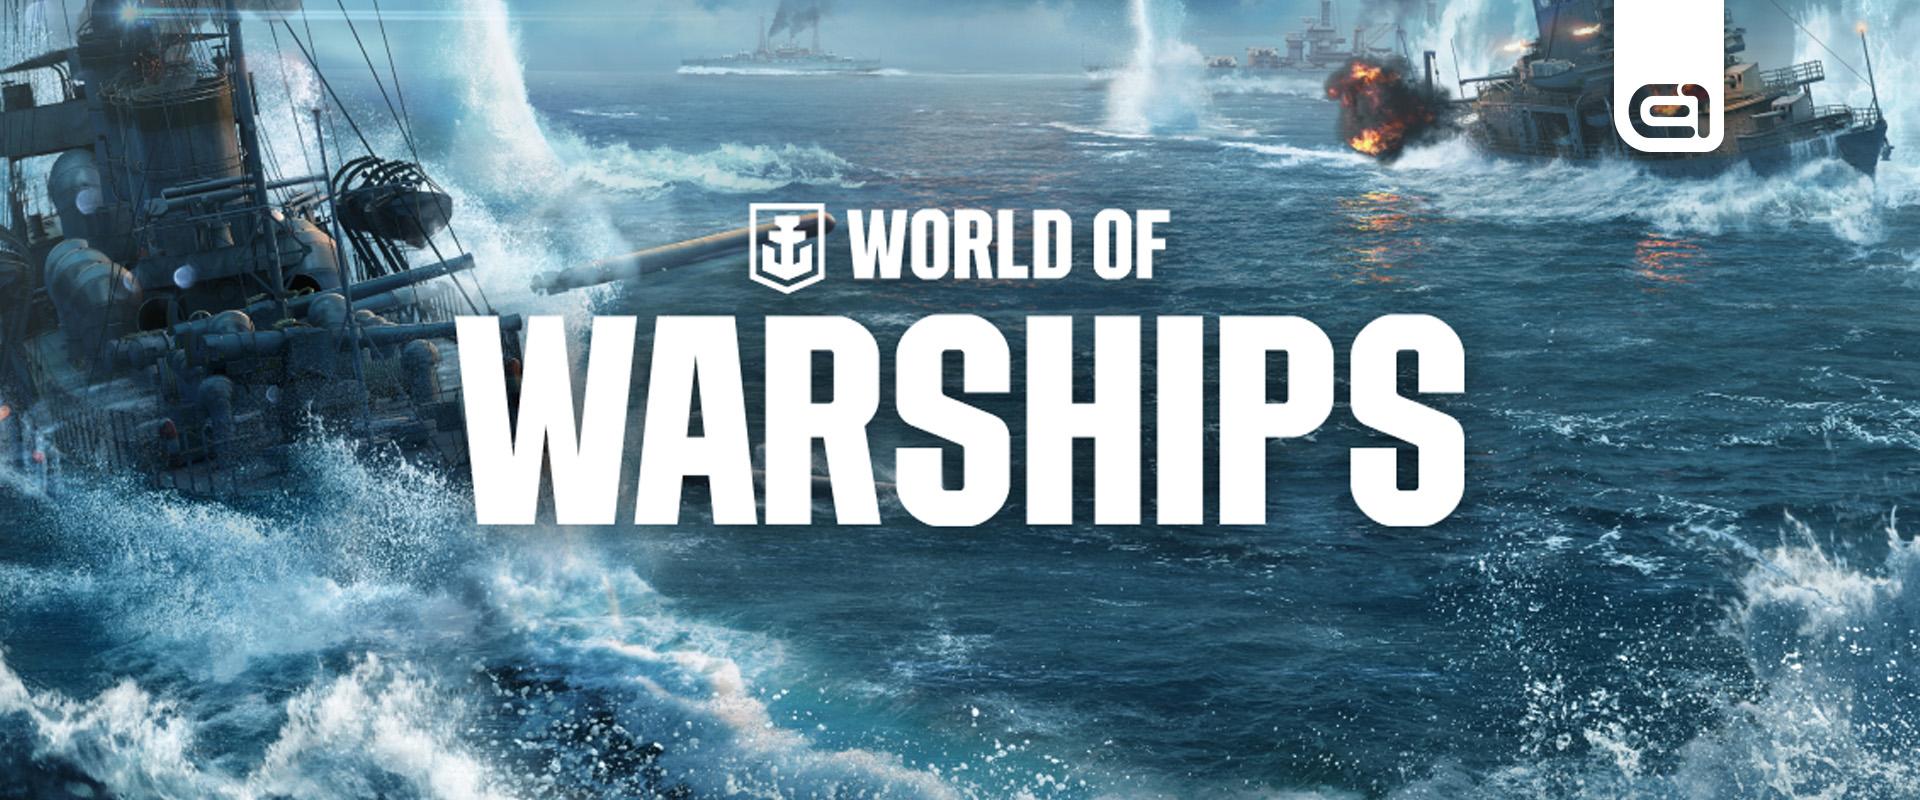 Ne maradj le az év legnagyobb World of Warships eseményéről